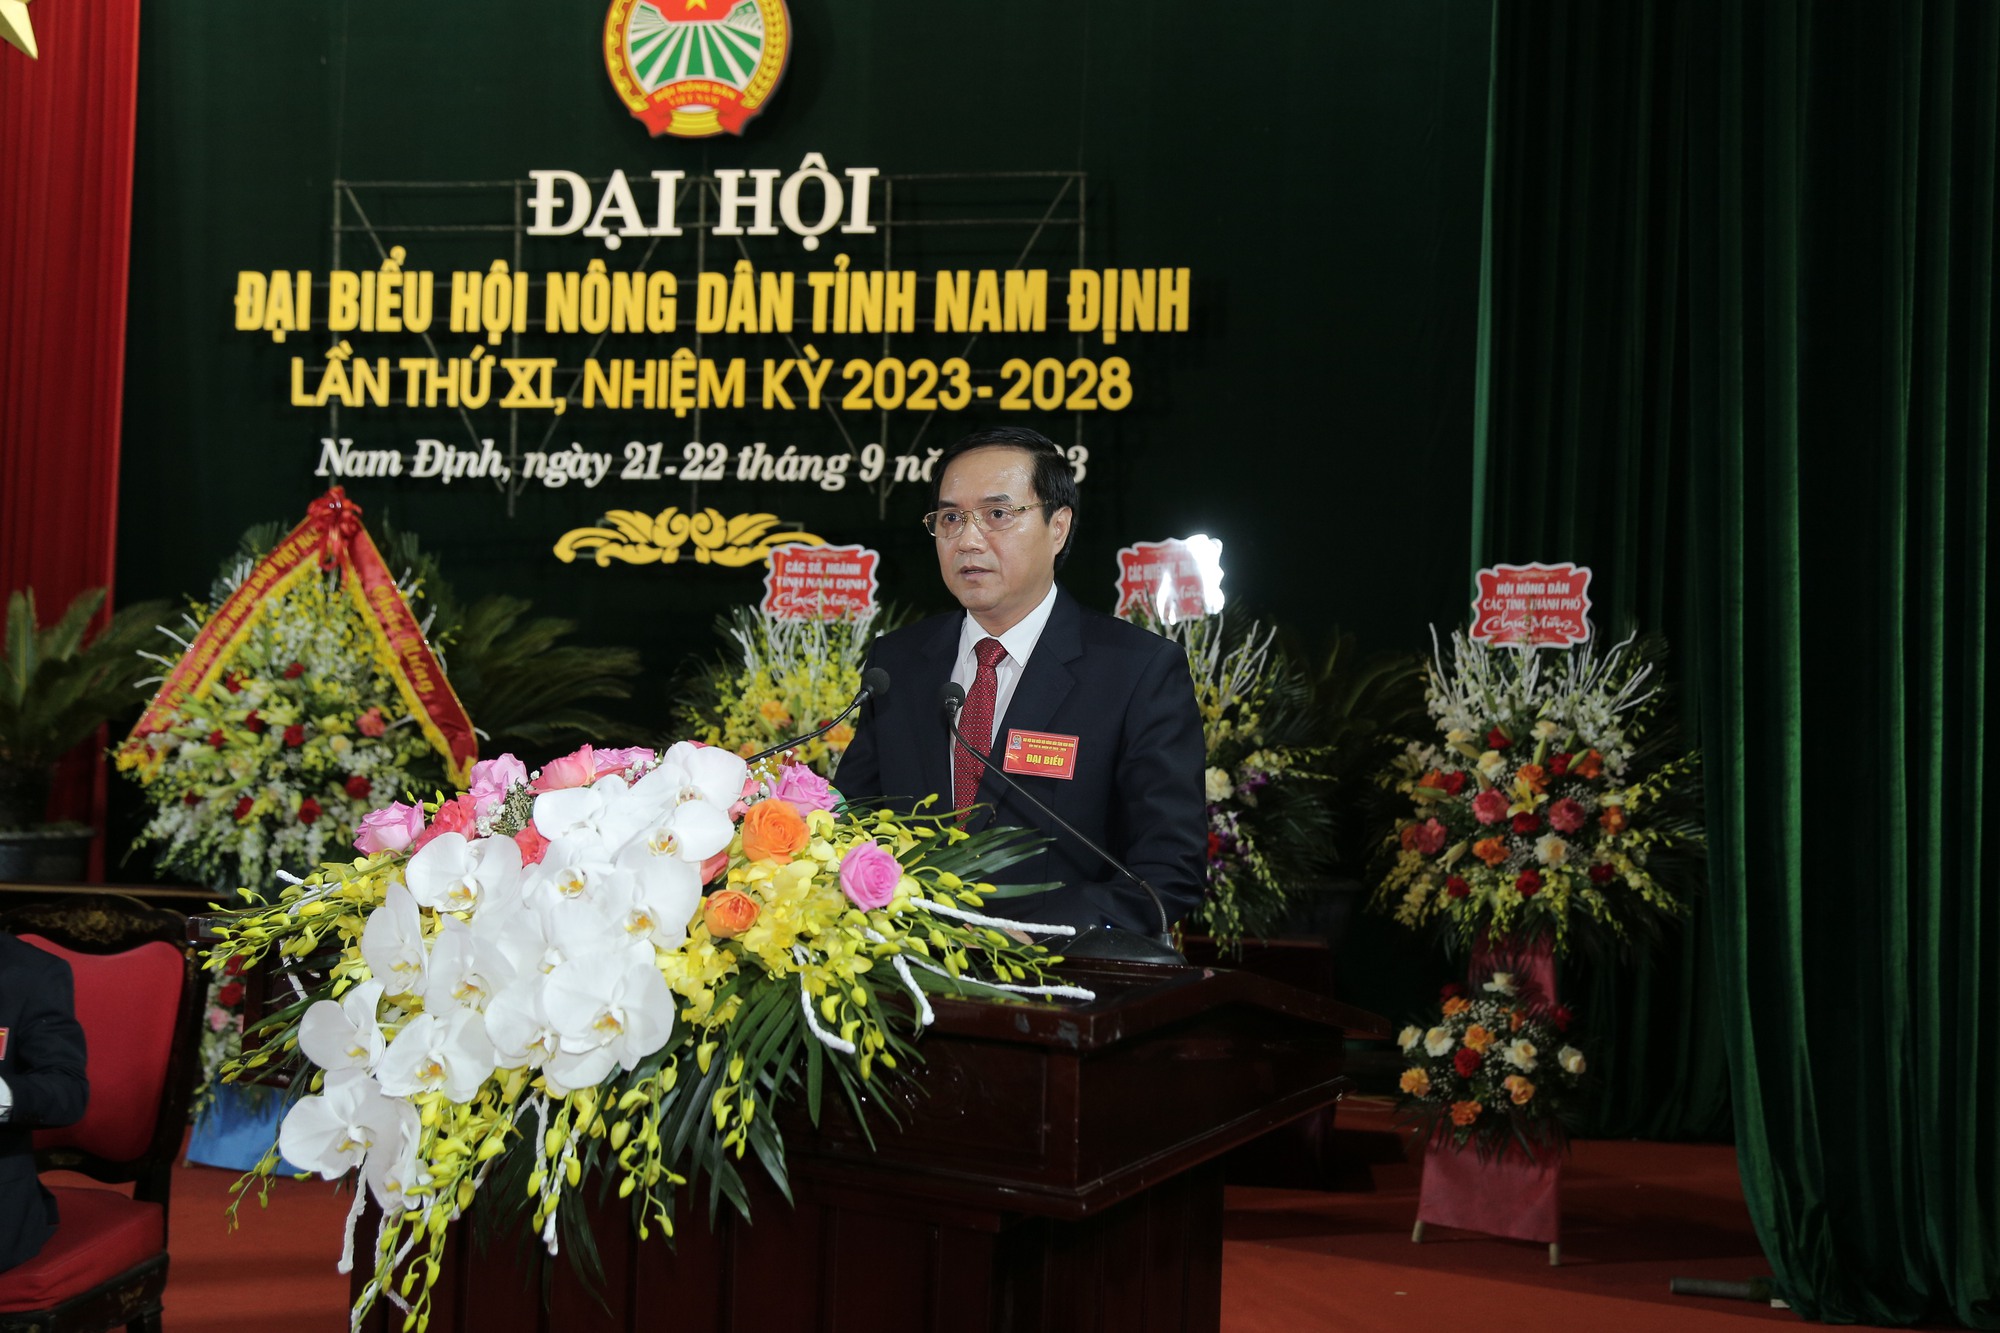 Chủ tịch Hội NDVN, Bí thư Tỉnh ủy Nam Định dự, chỉ đạo Đại hội đại biểu Hội Nông dân tỉnh Nam Định  - Ảnh 2.